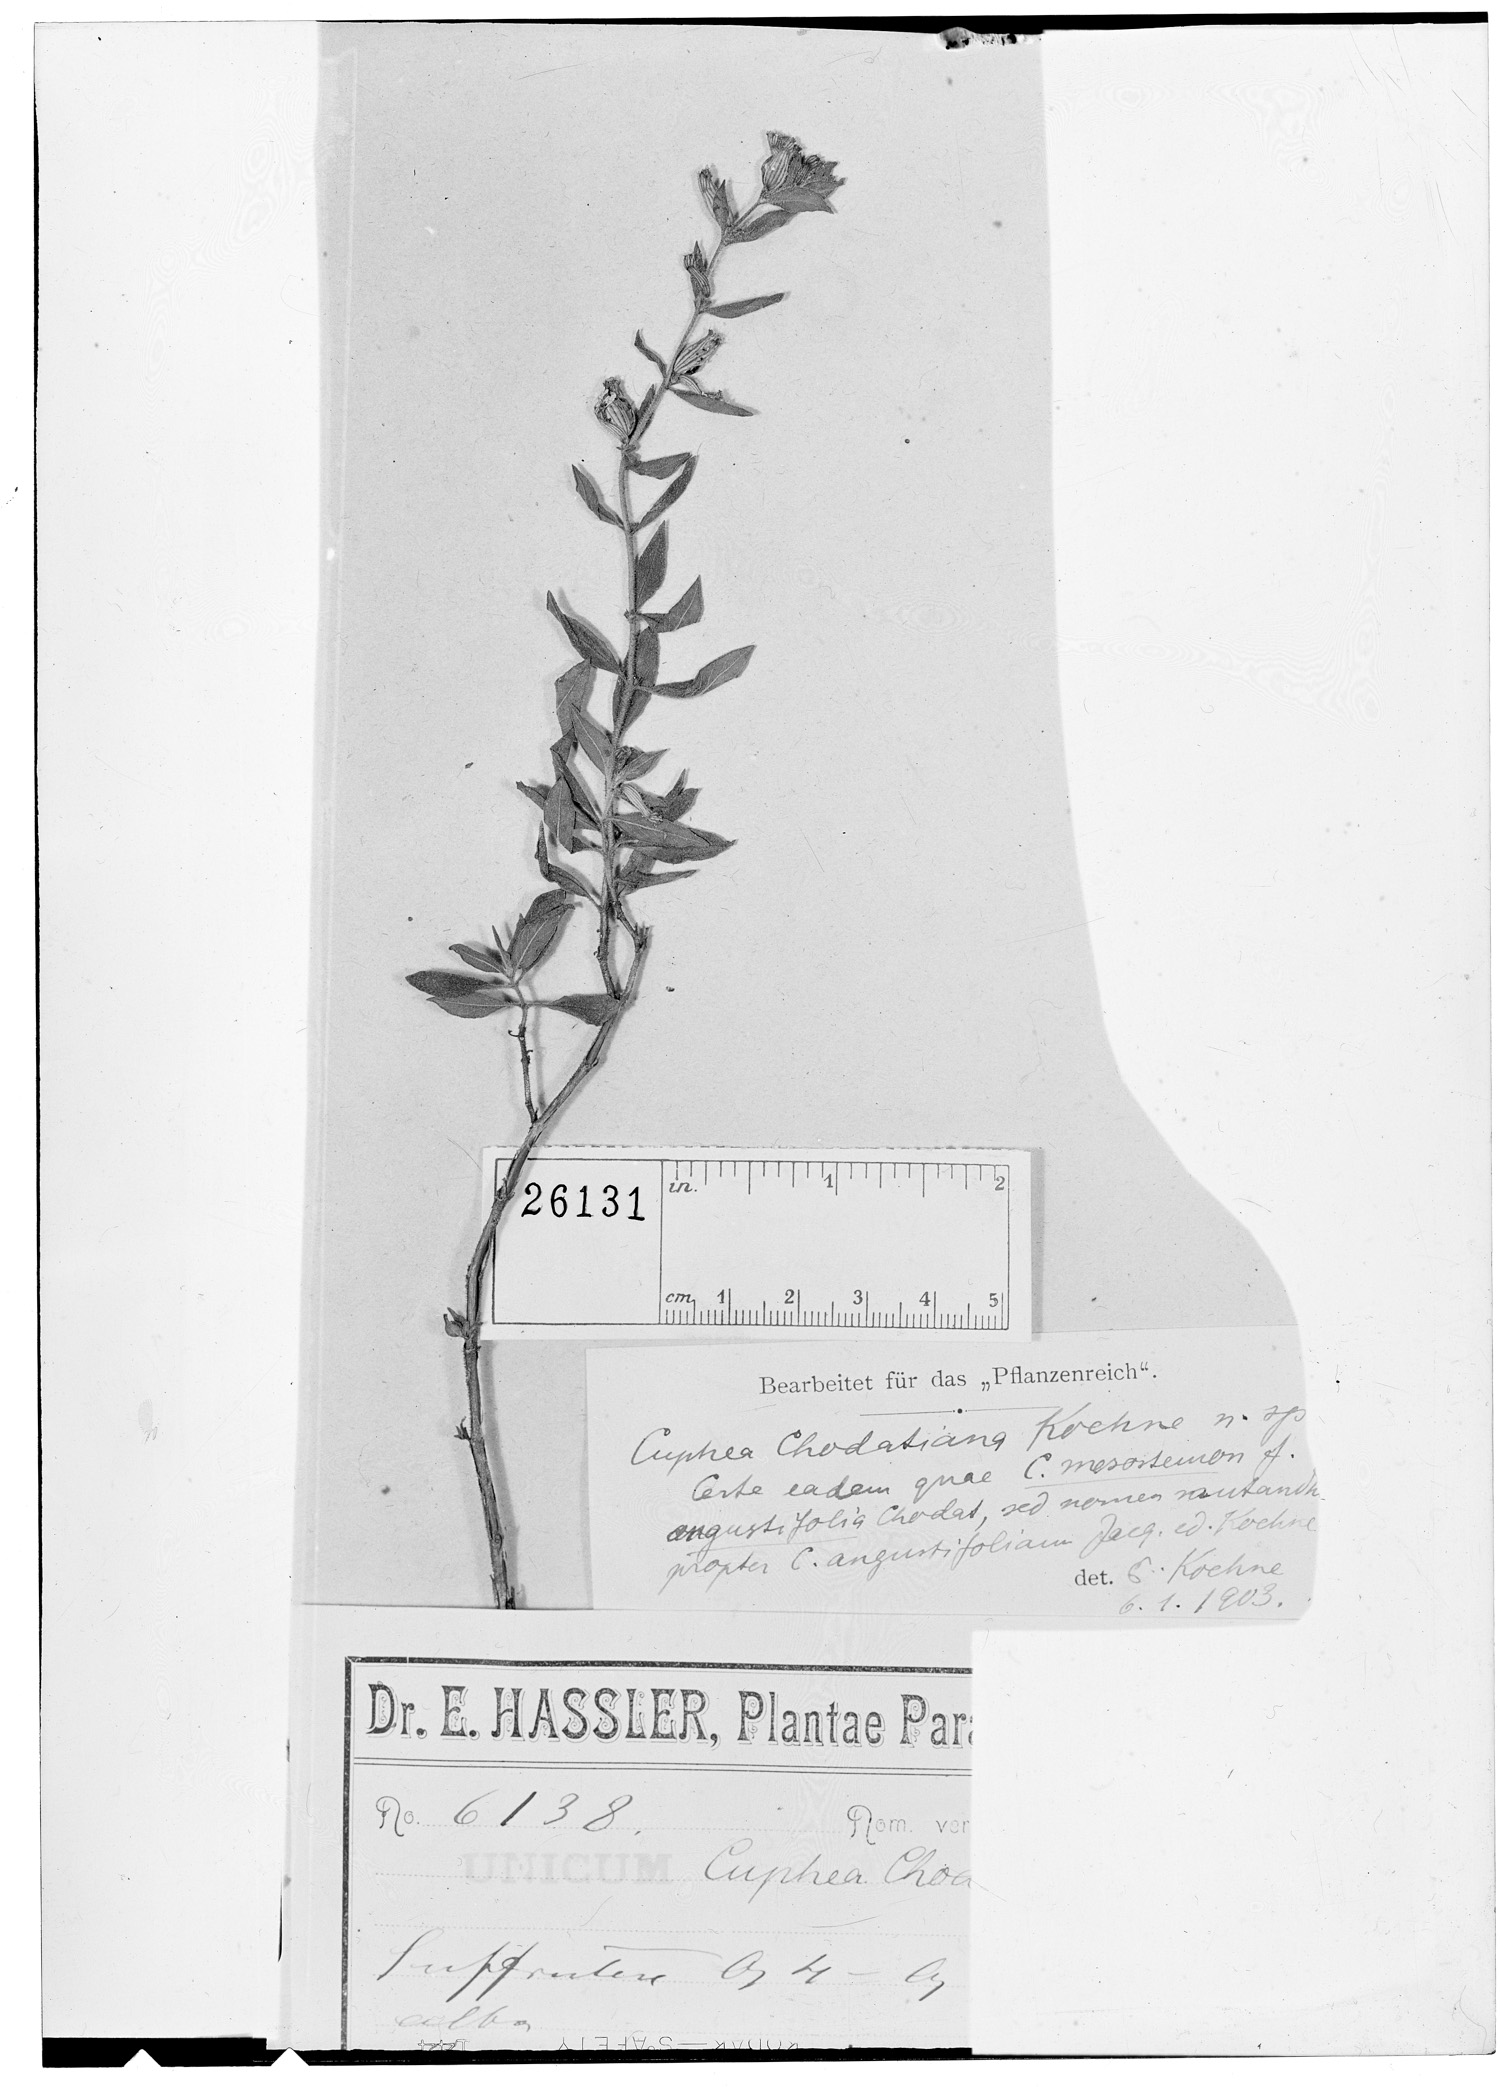 Cuphea sessiliflora image